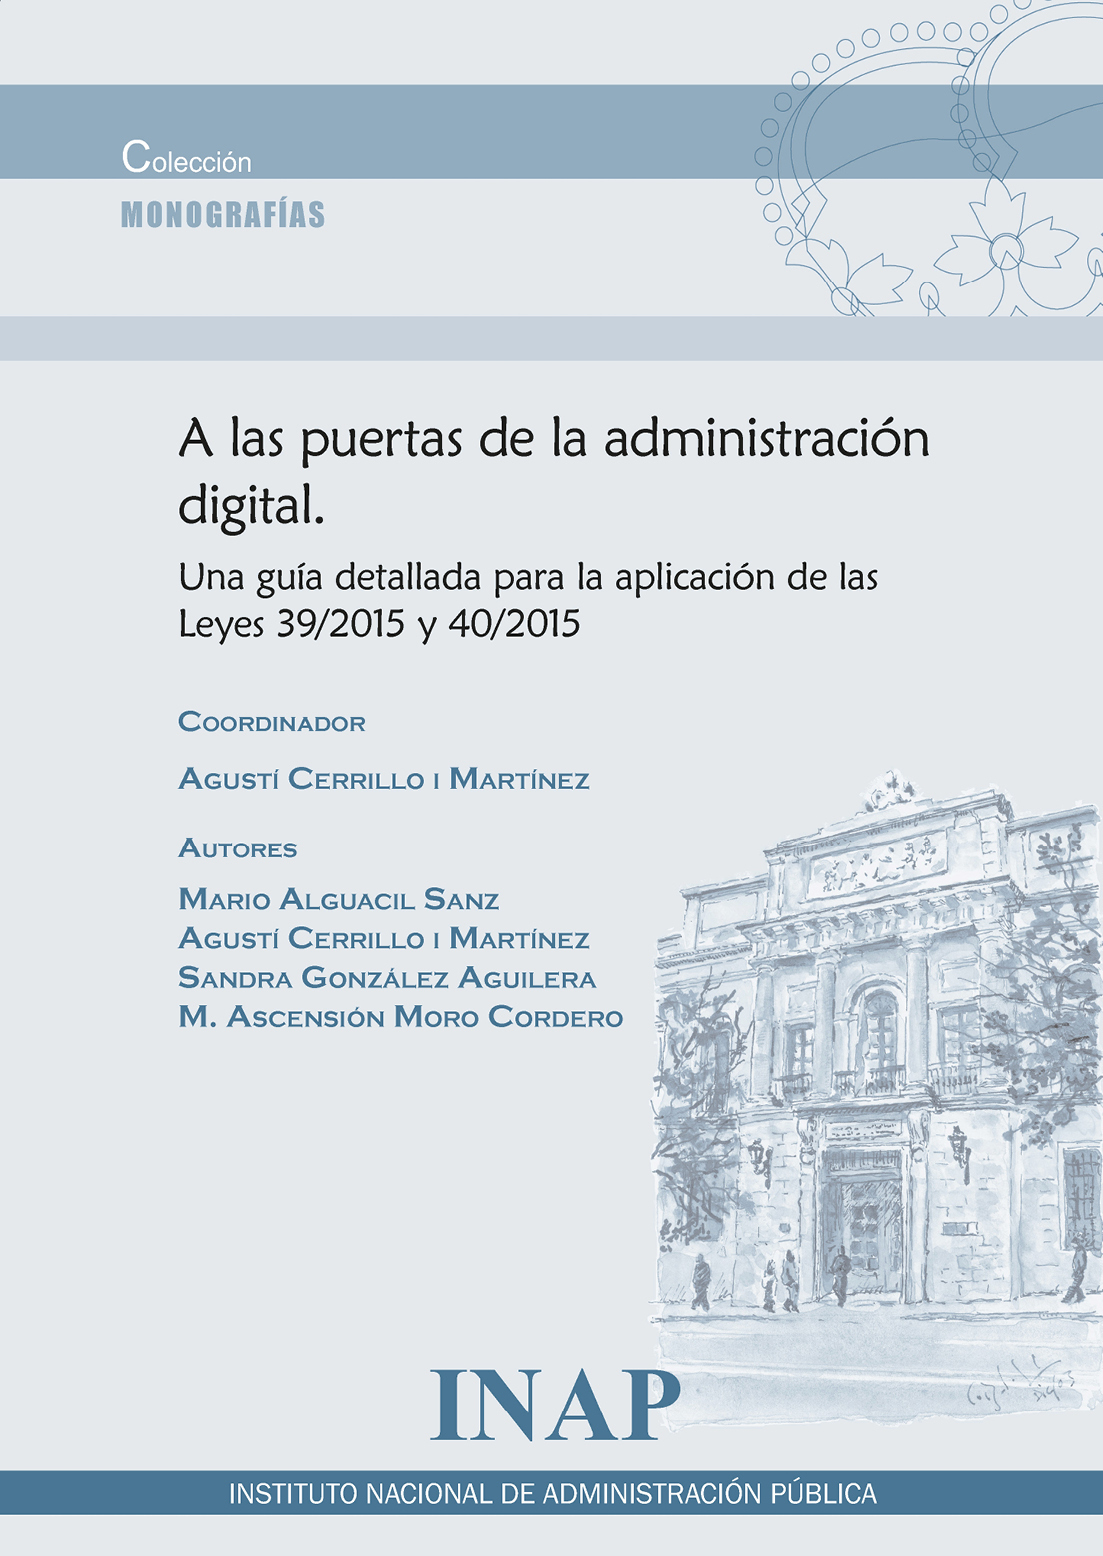 A las puertas de la administración digital. Una guía detallada para la aplicación de las Leyes 39/2015 y 40/2015 